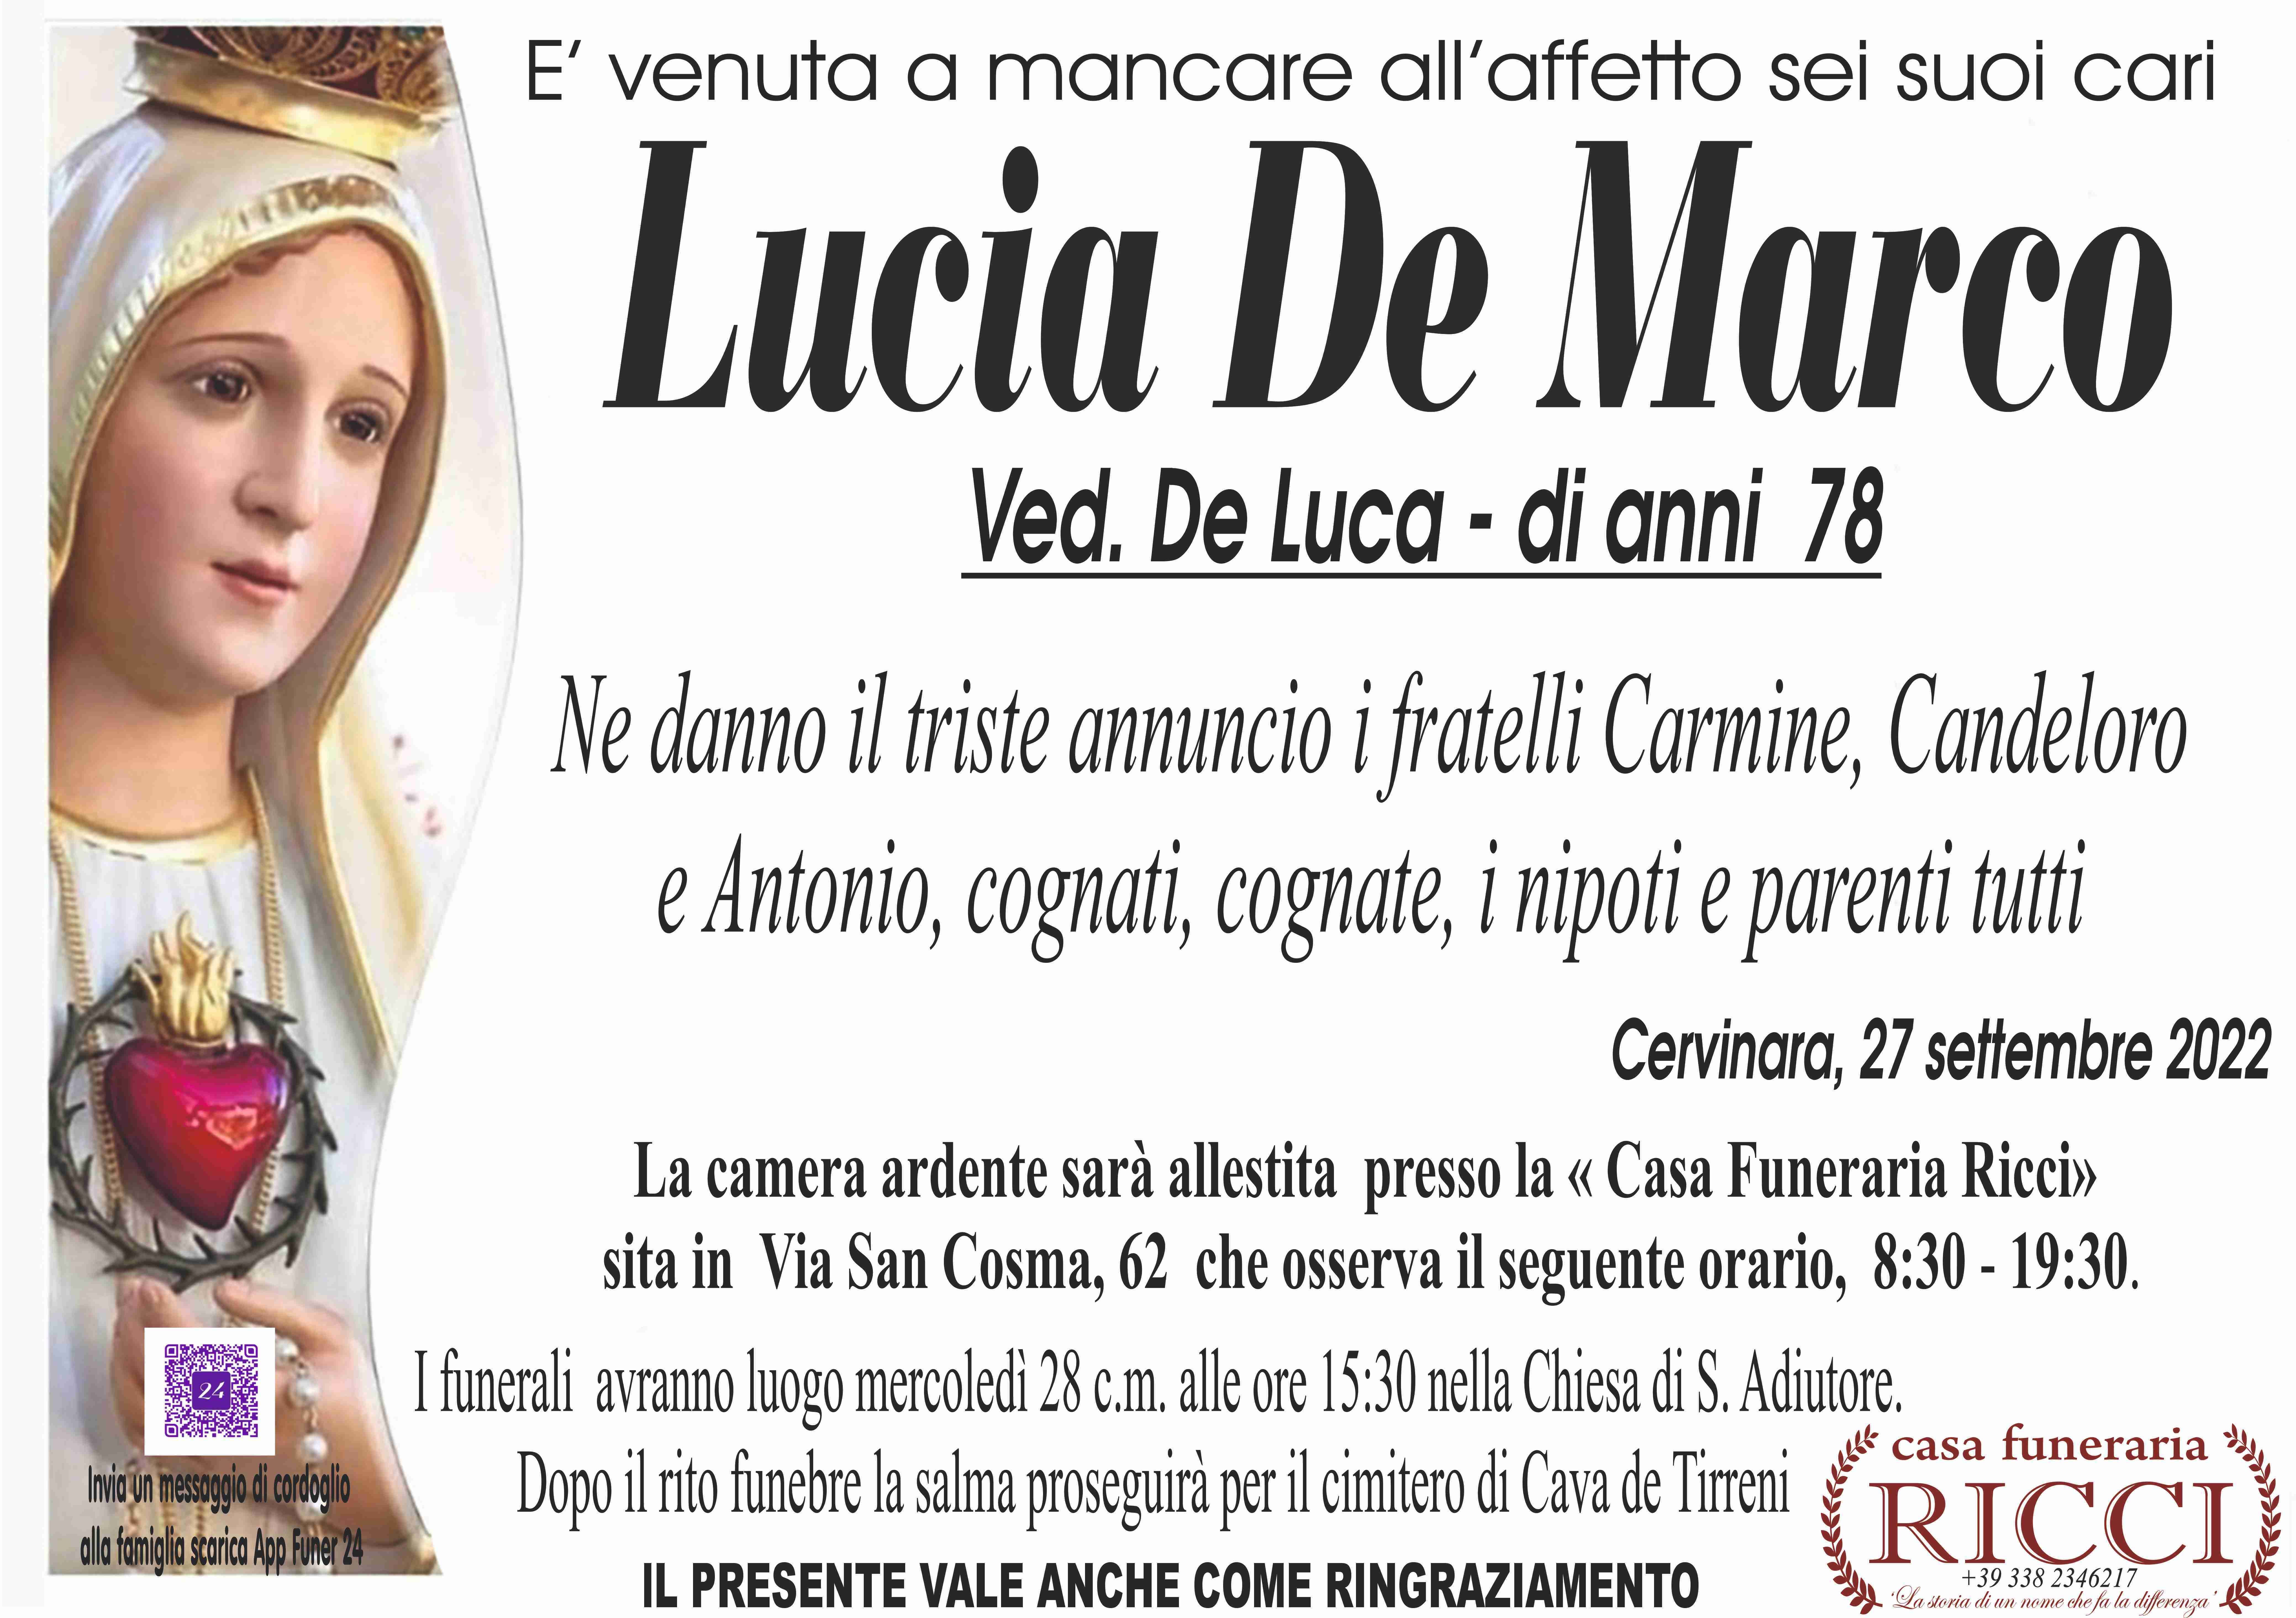 Lucia De Marco